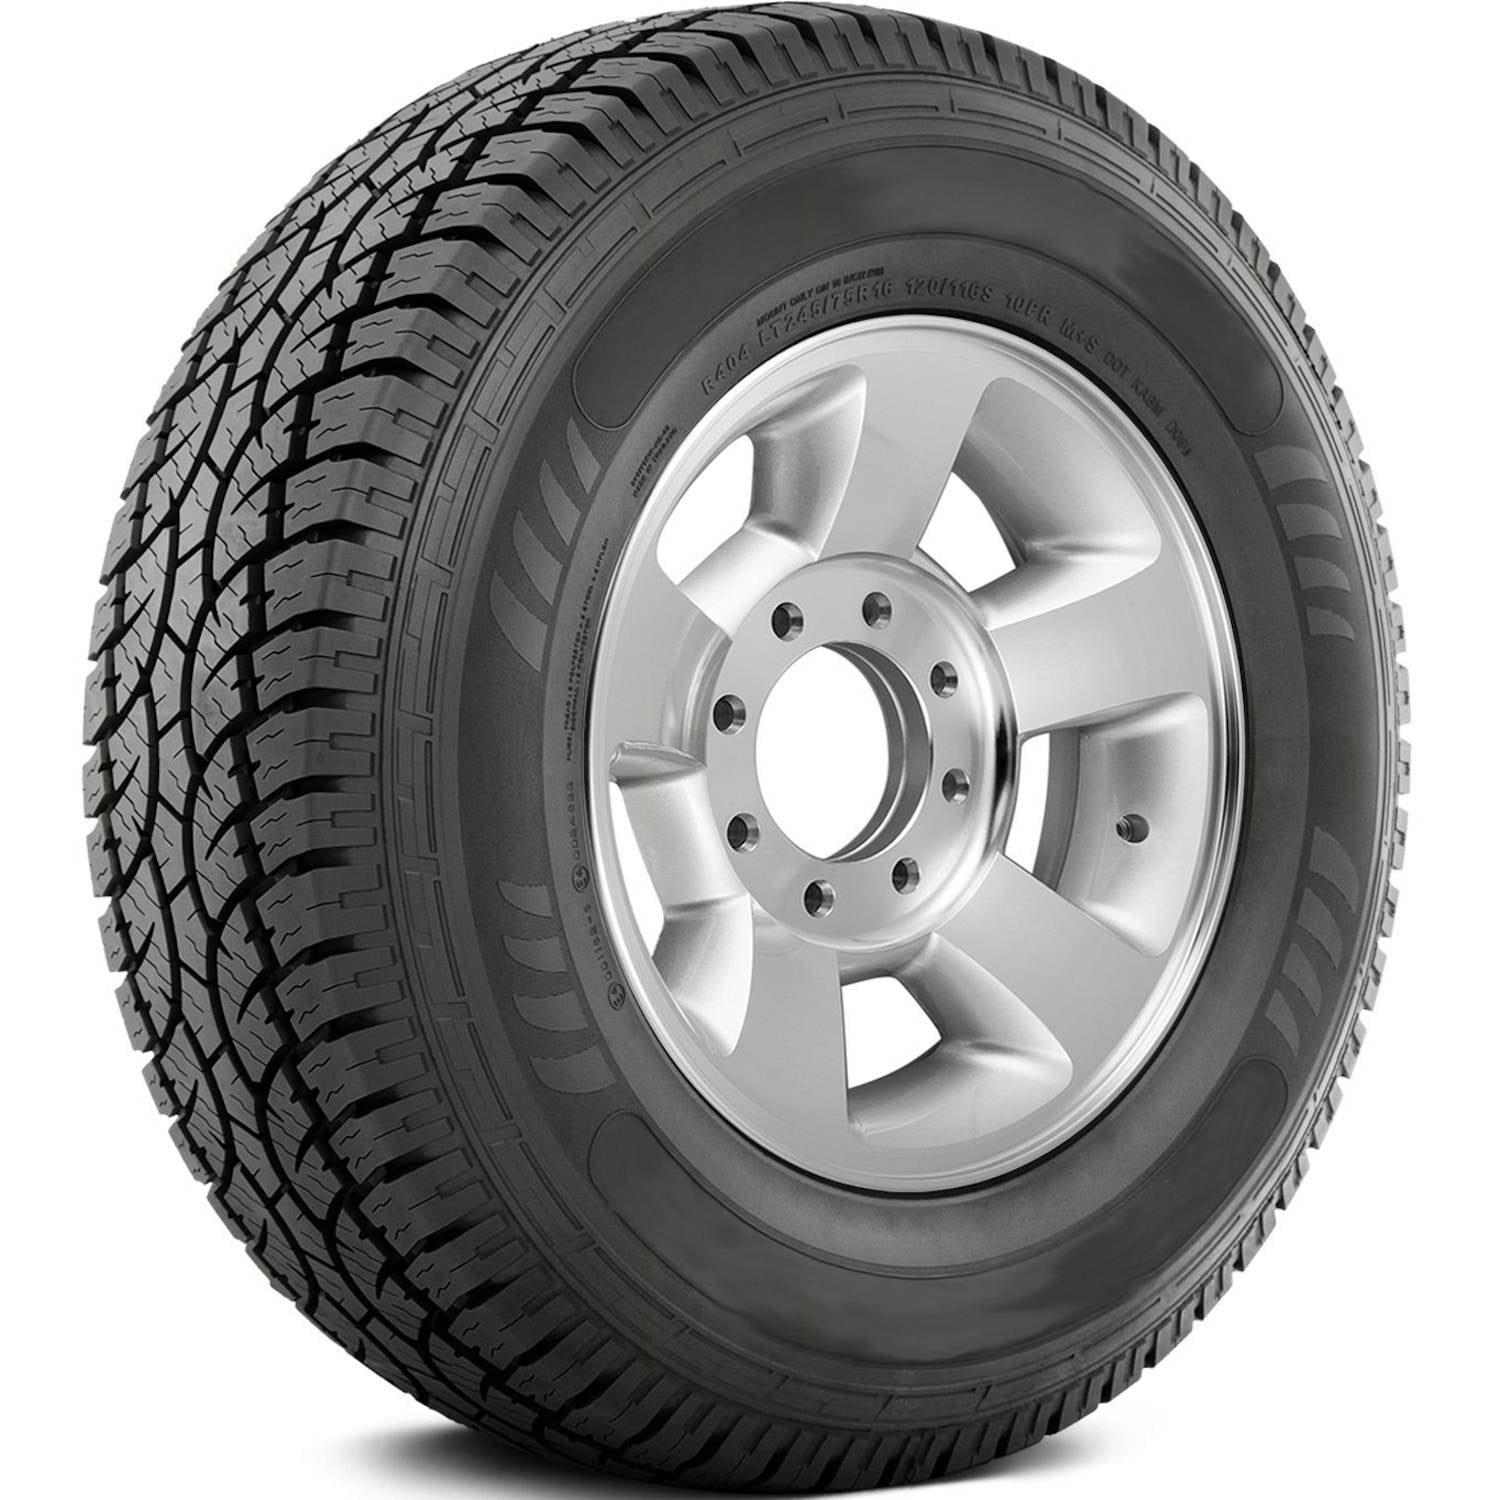 AMERICUS RUGGED ALL TERRAIN 265/70R18 (32.6X10.4R 18) Tires